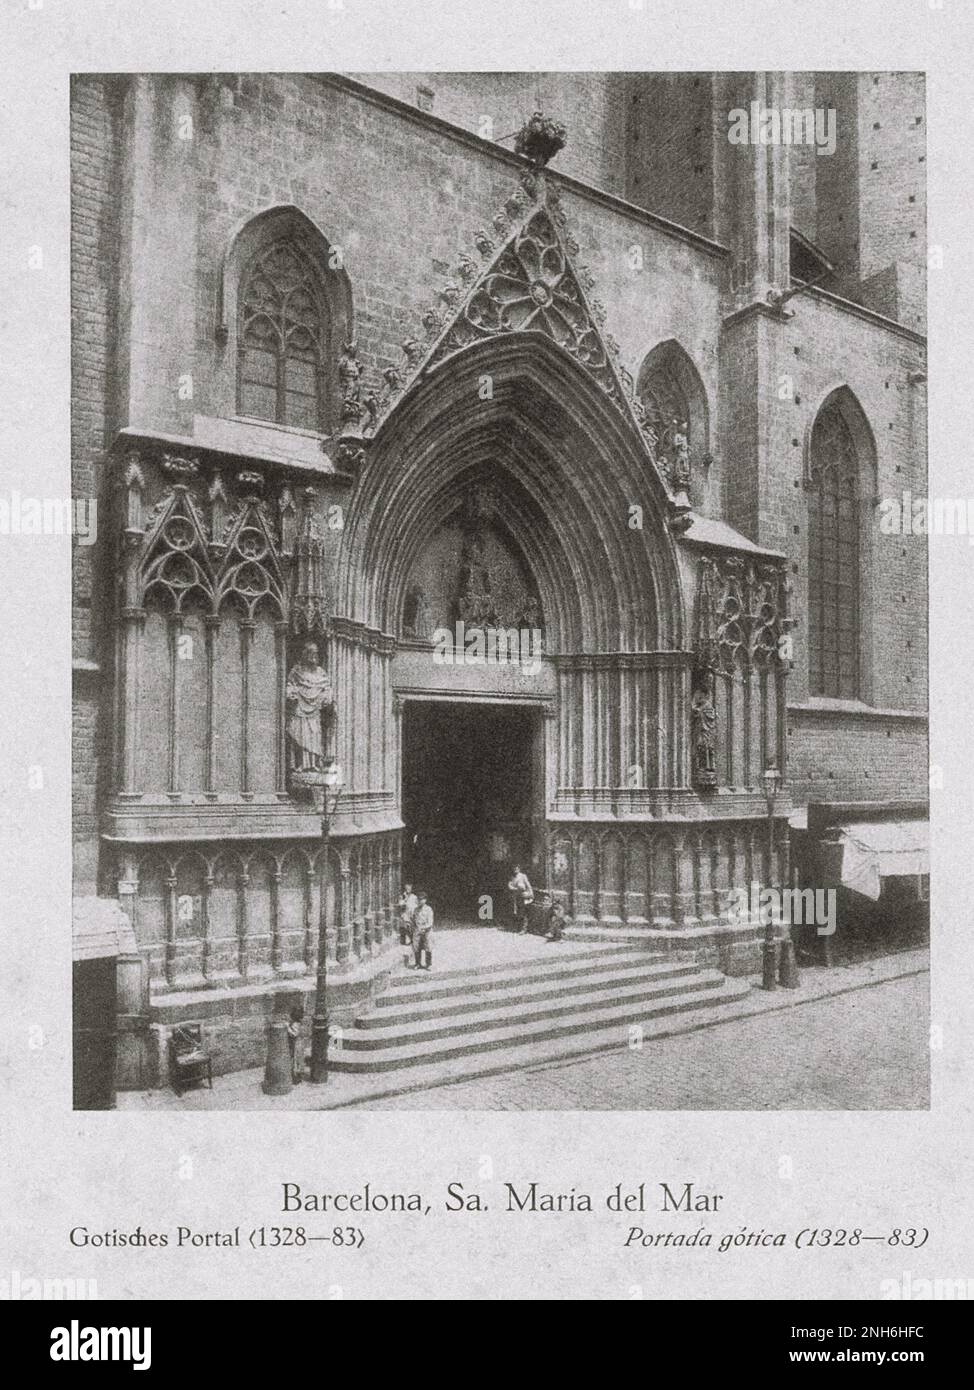 Architektur des alten Spaniens. Vintage-Foto von Santa Maria del Mar, Barcelona. Gotisches Portal (1328-1383) Stockfoto